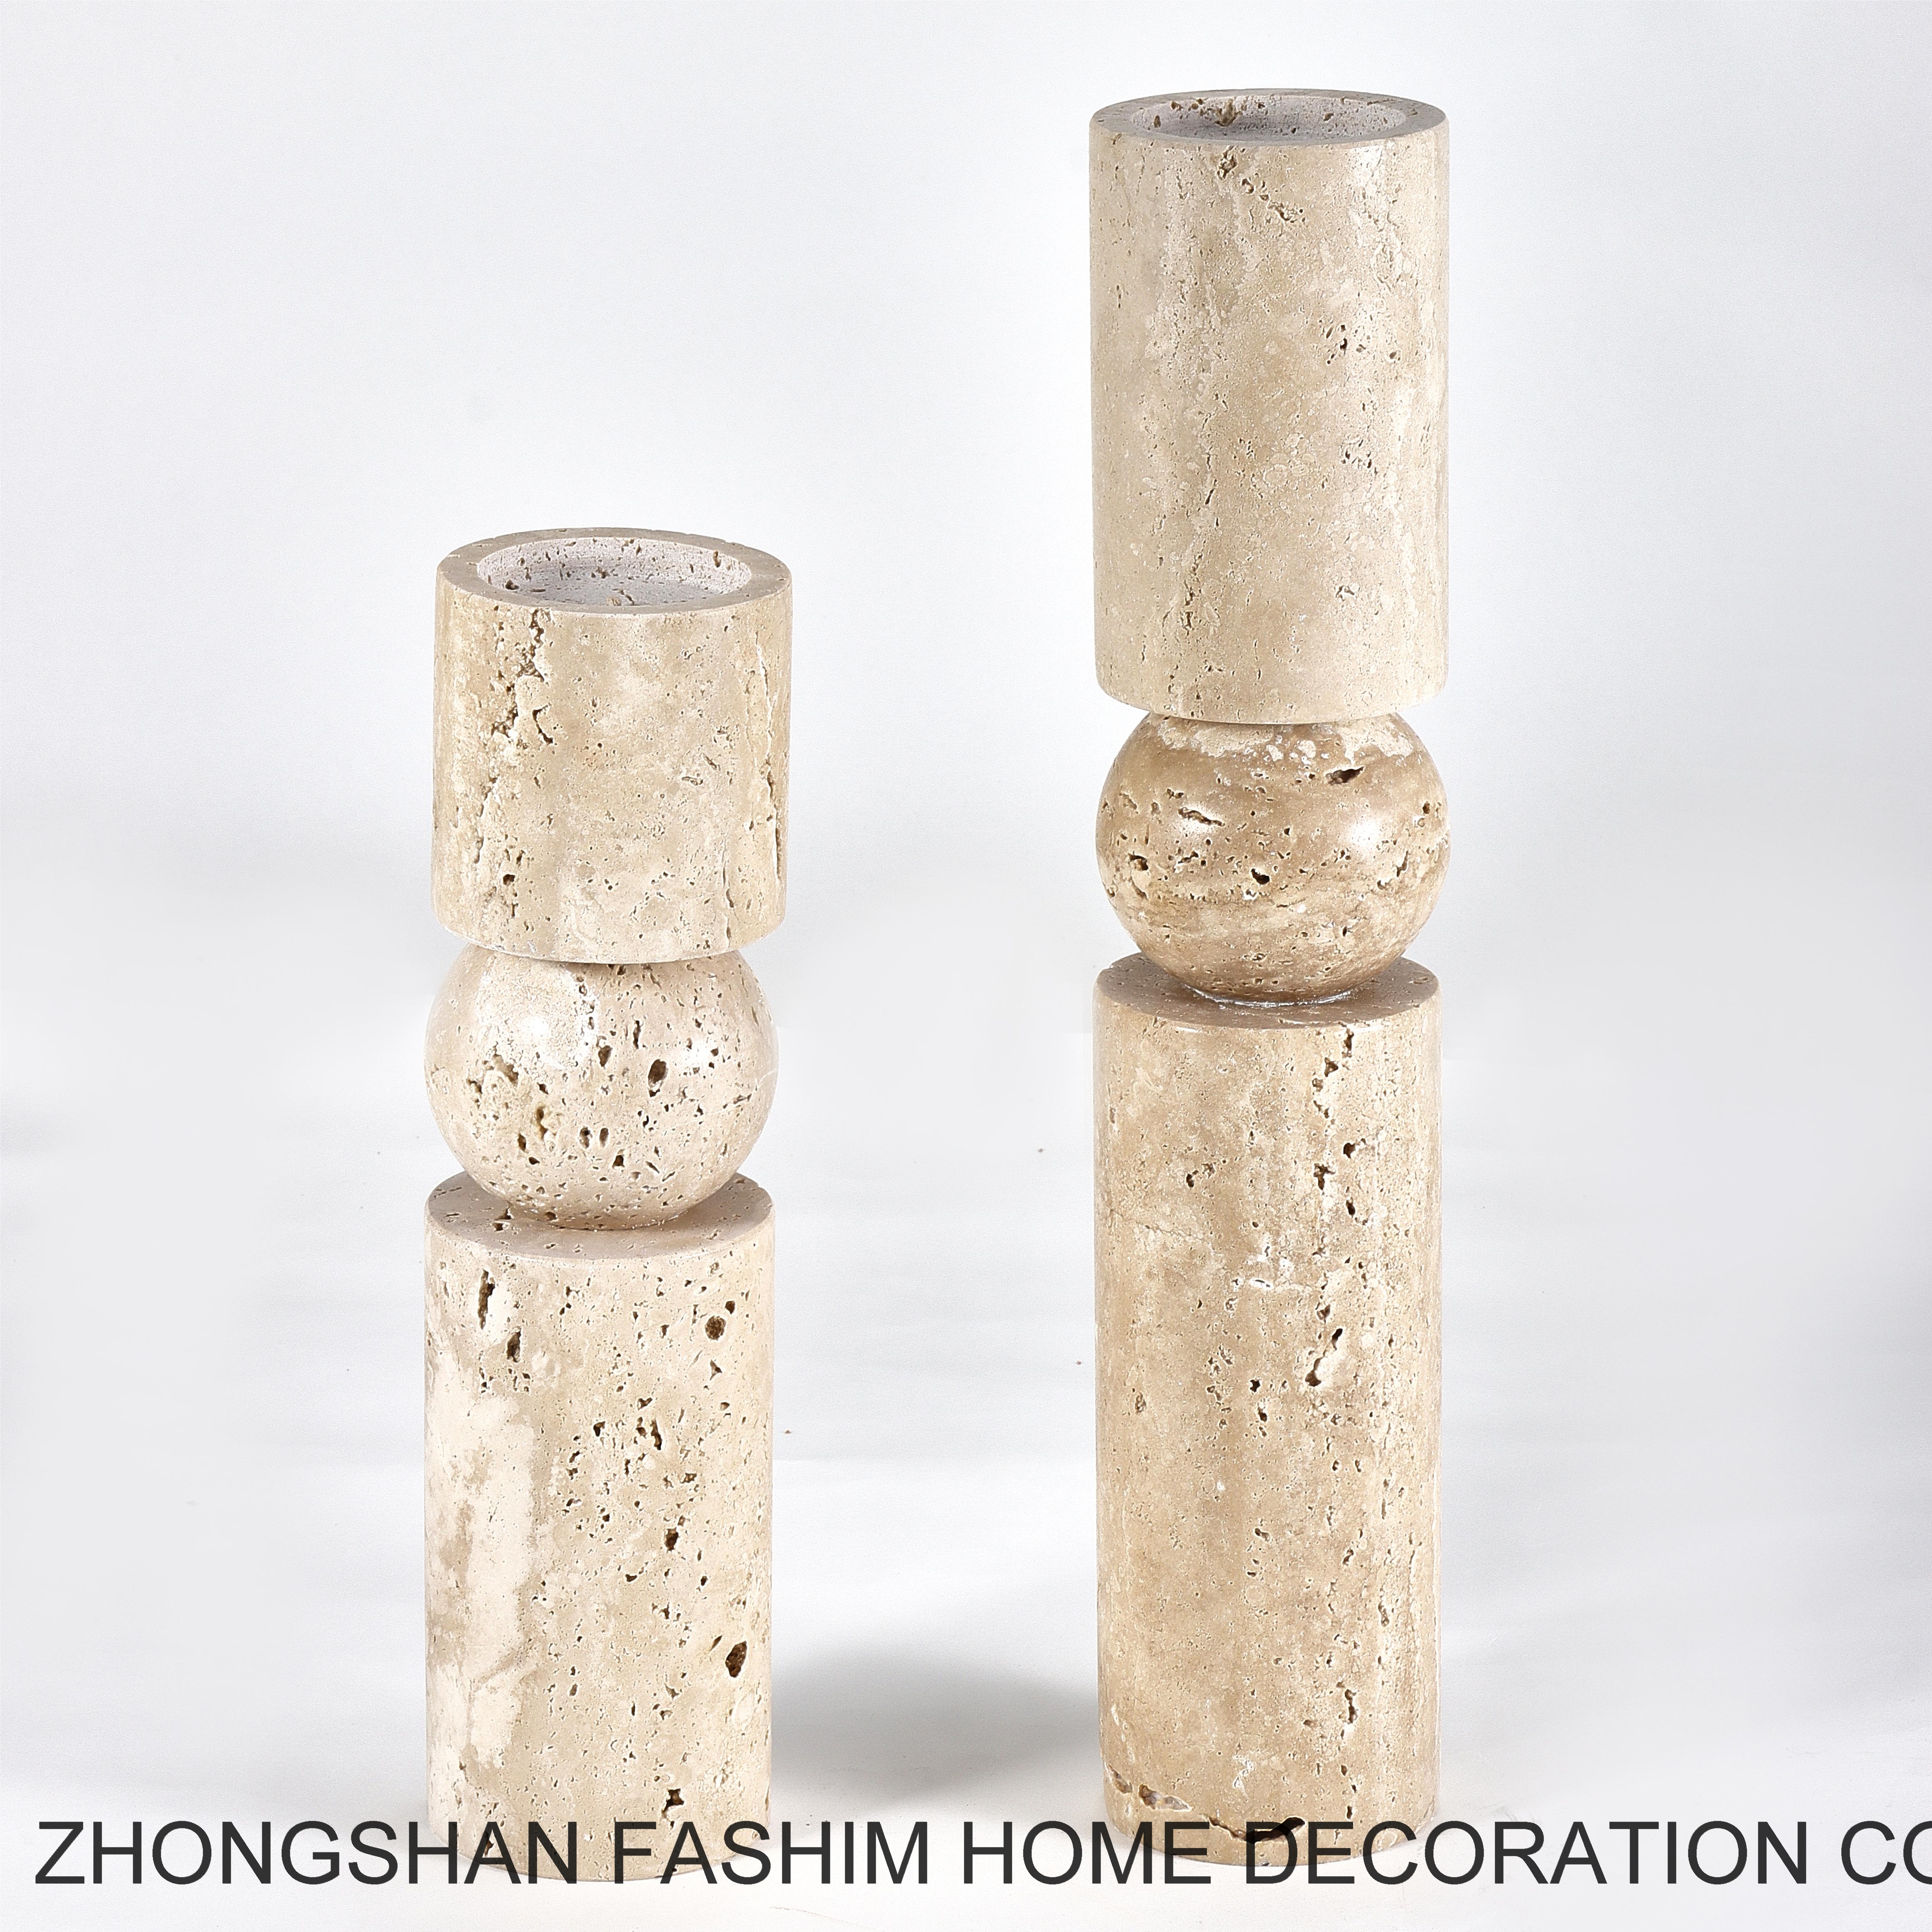 Fashimdecor Stone Candle Holder Illuminates Any Space